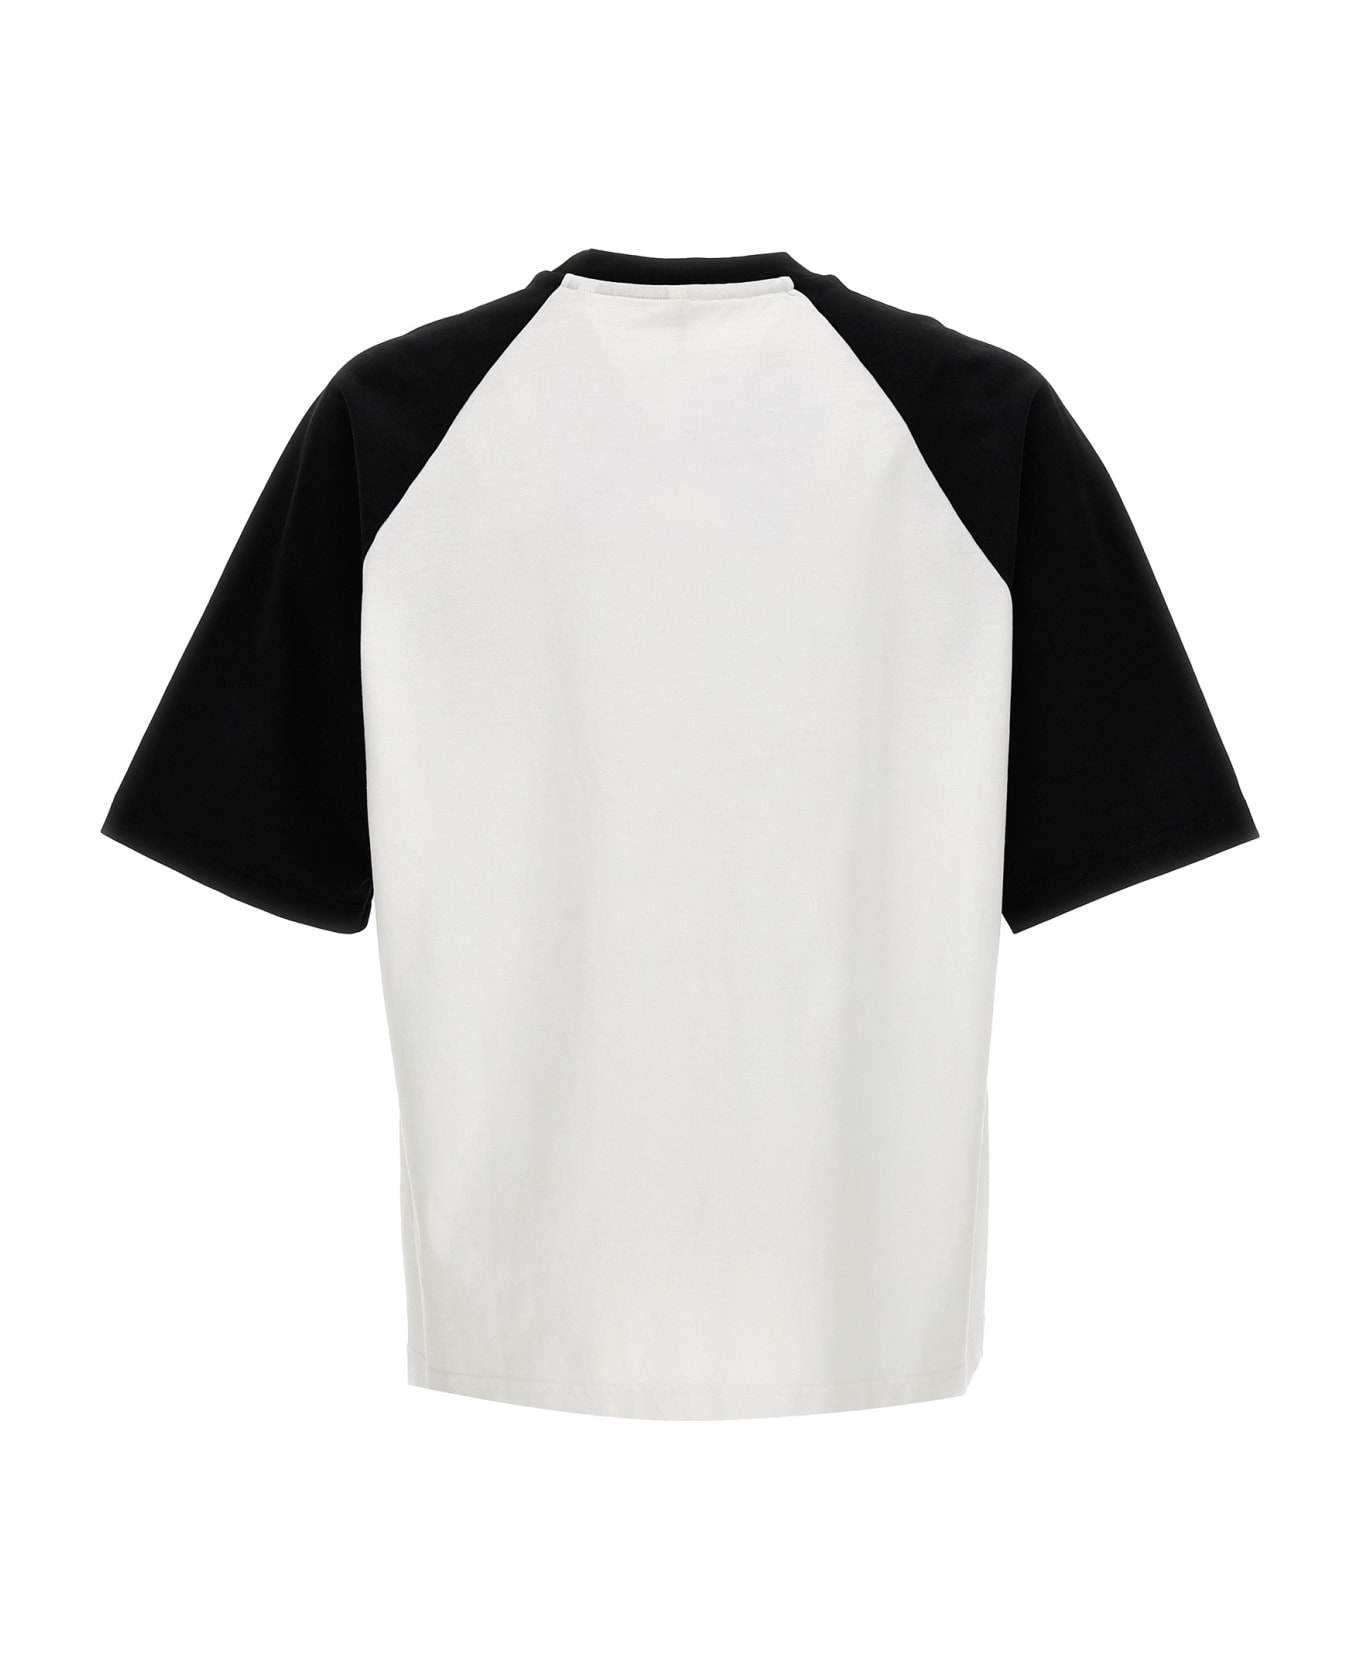 Sunflower 'baseball' T-shirt - White/Black